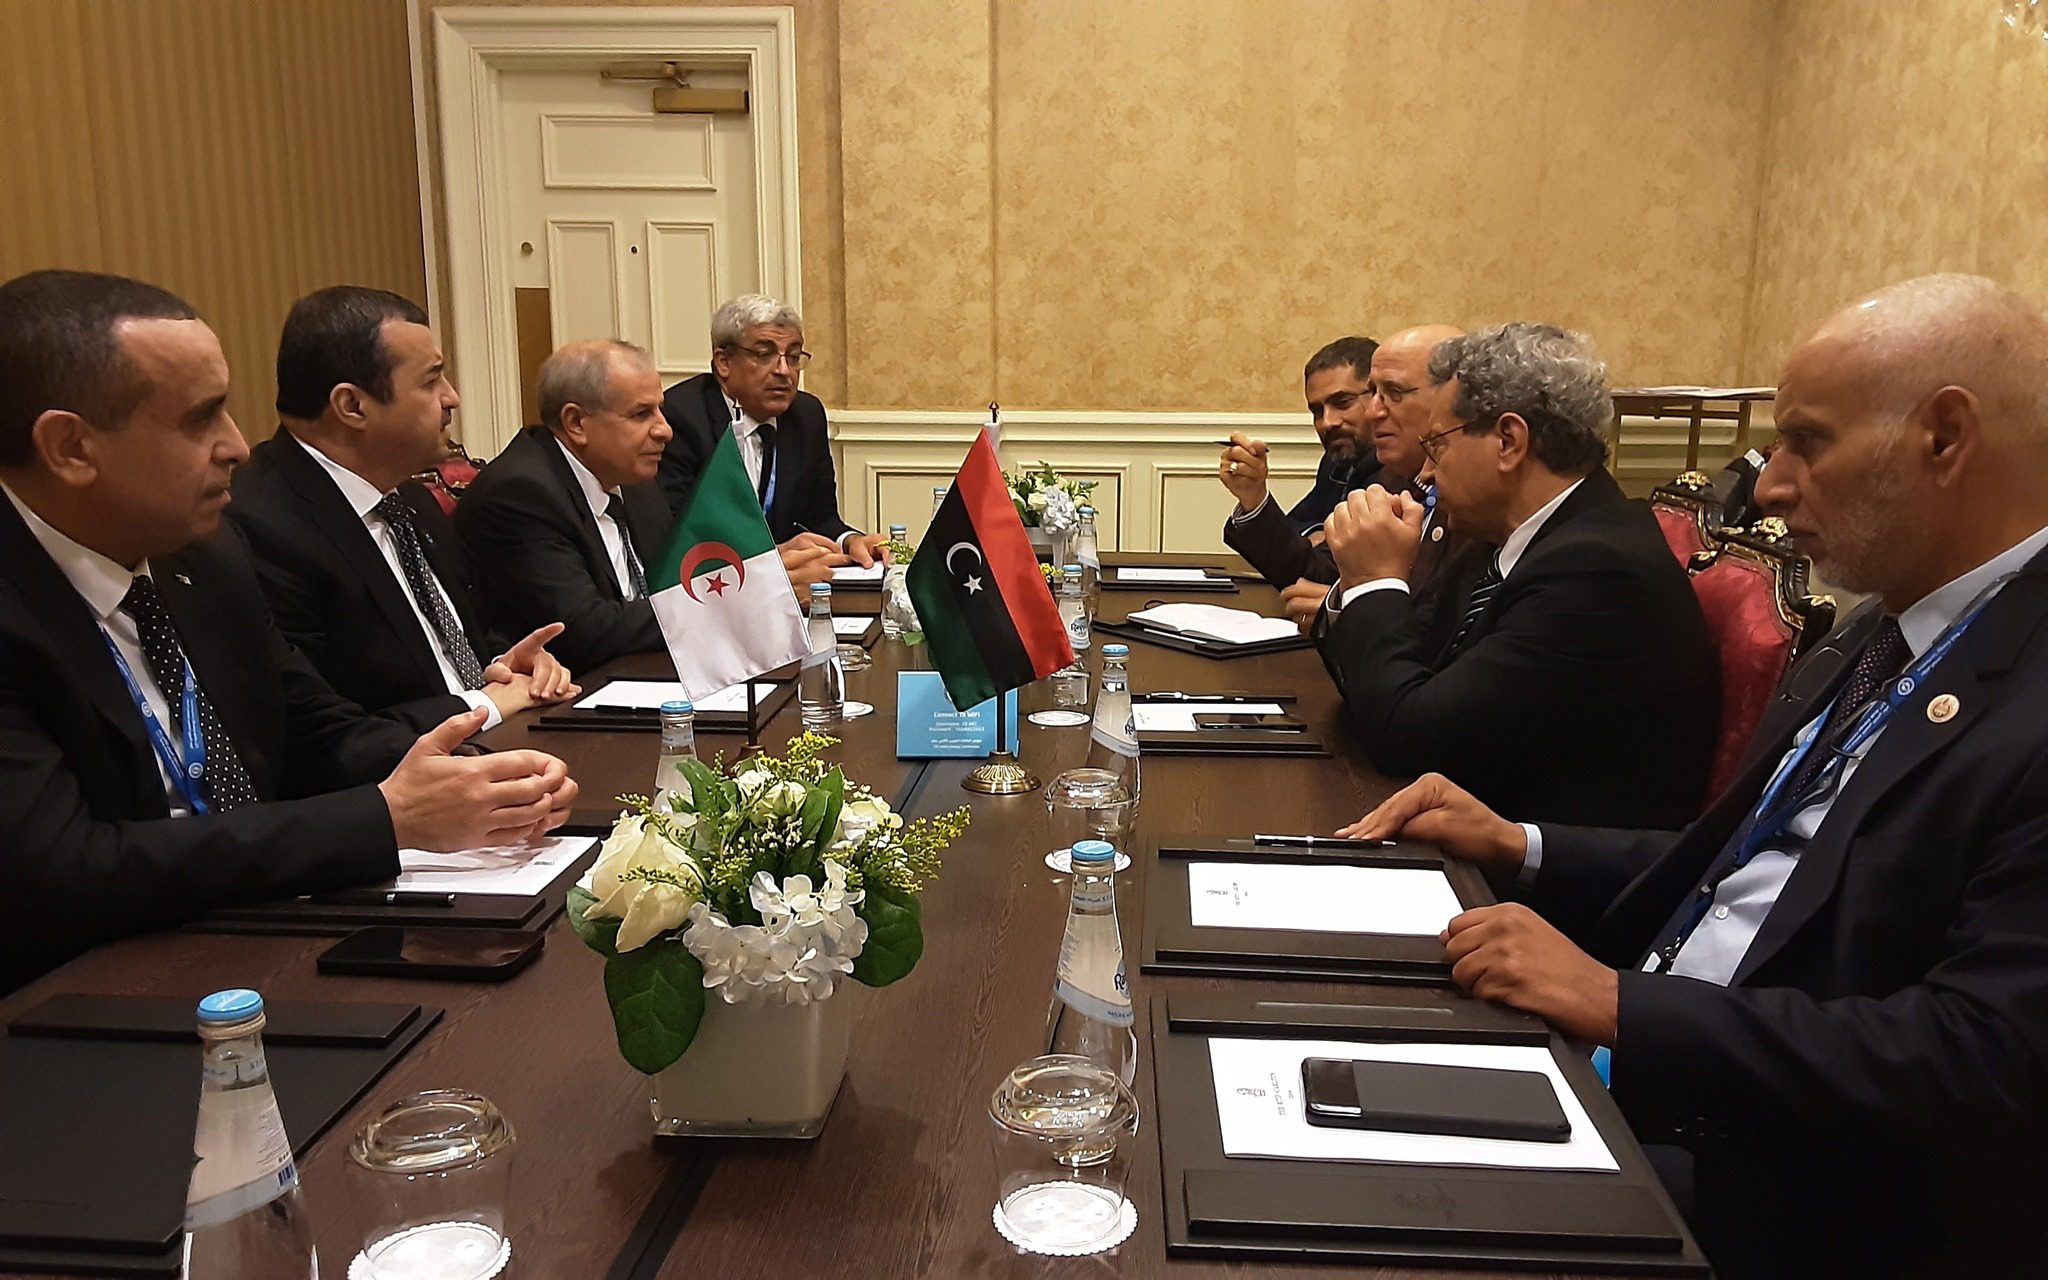 Coopération Énergétique au Sommet Rencontre Entre la Libye, le Qatar et l'Algérie à la 12ème Conférence Arabe sur l'Énergie